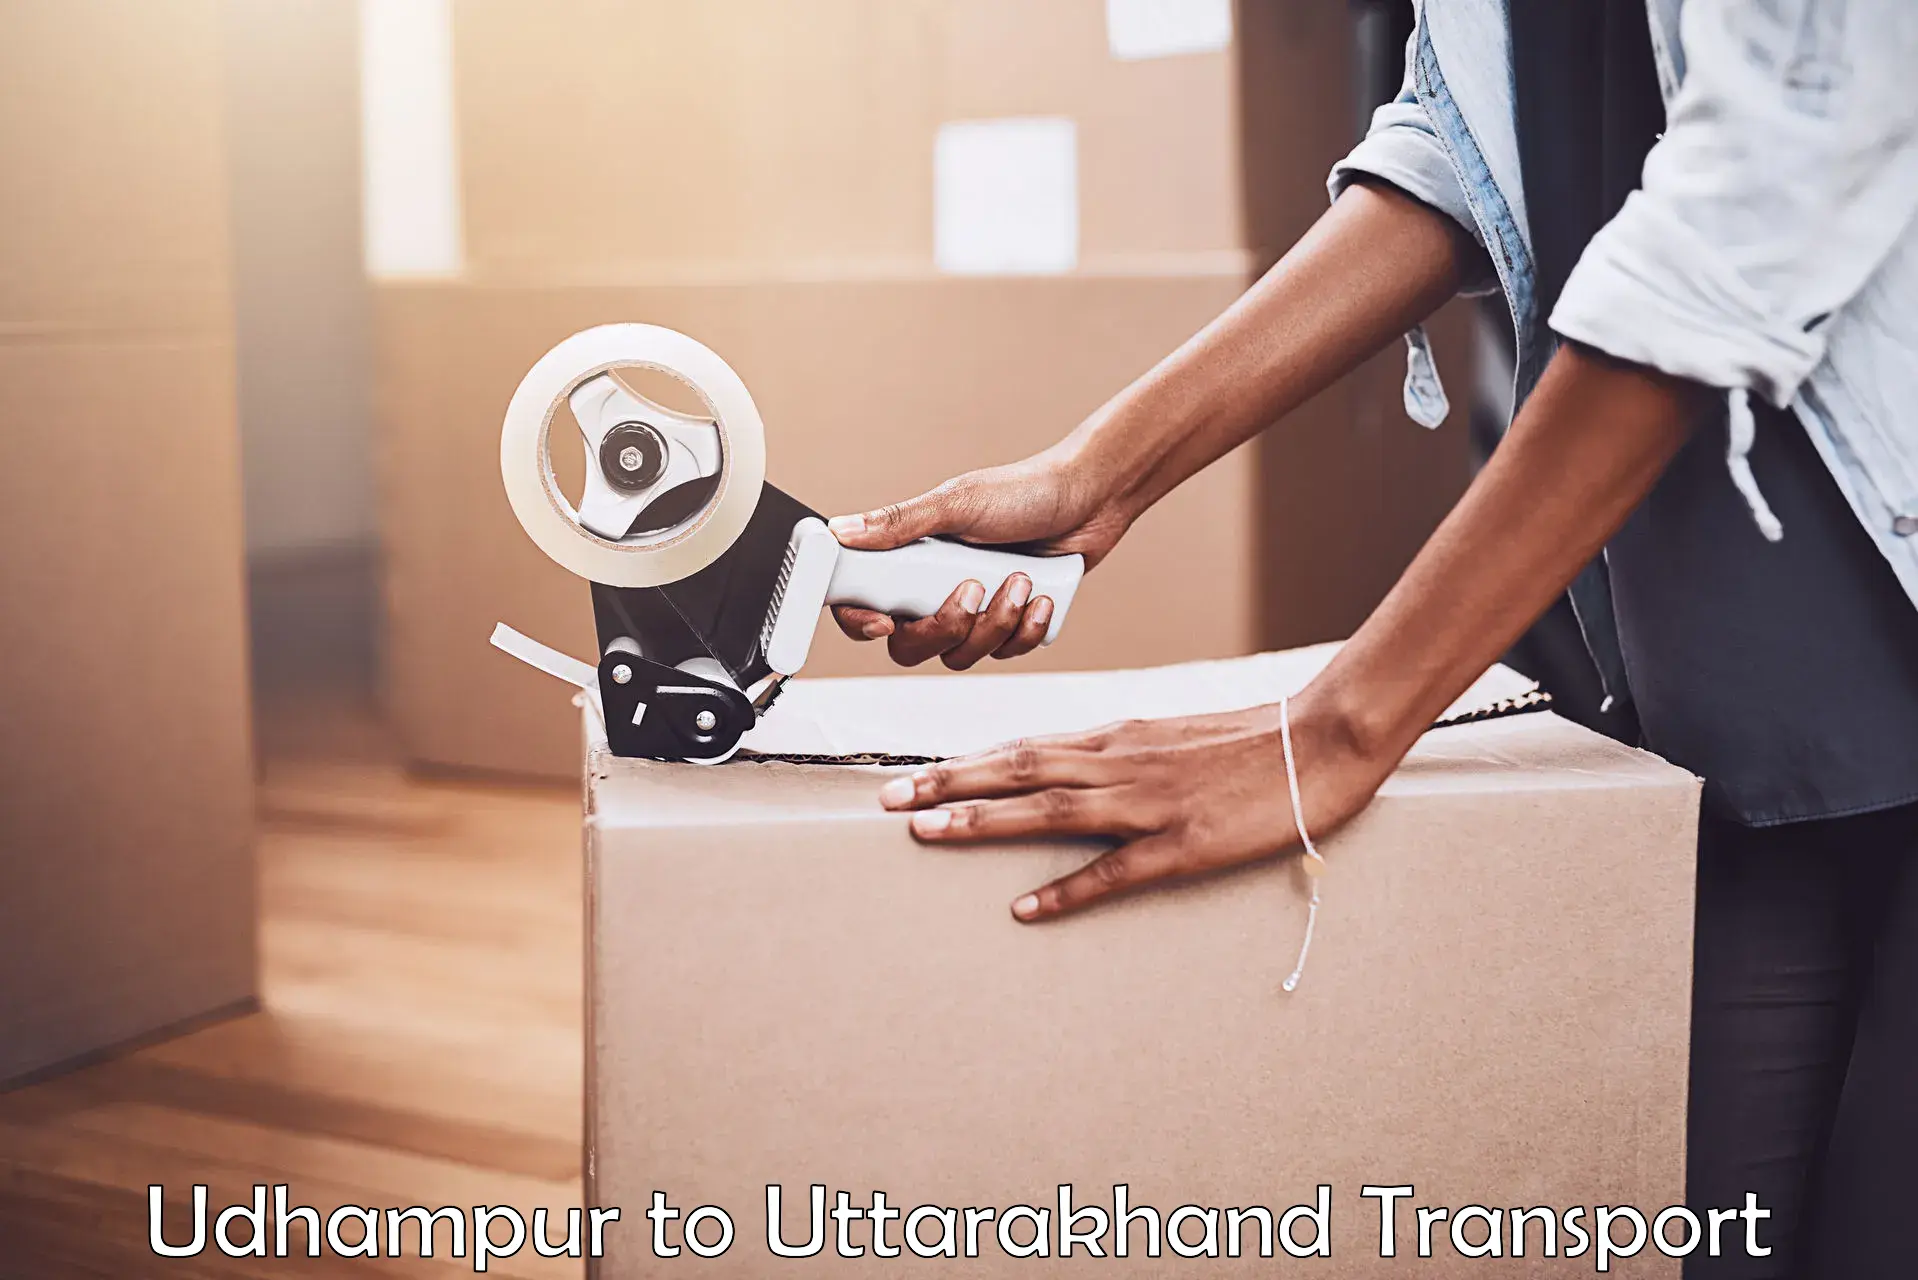 Shipping services Udhampur to Nainital